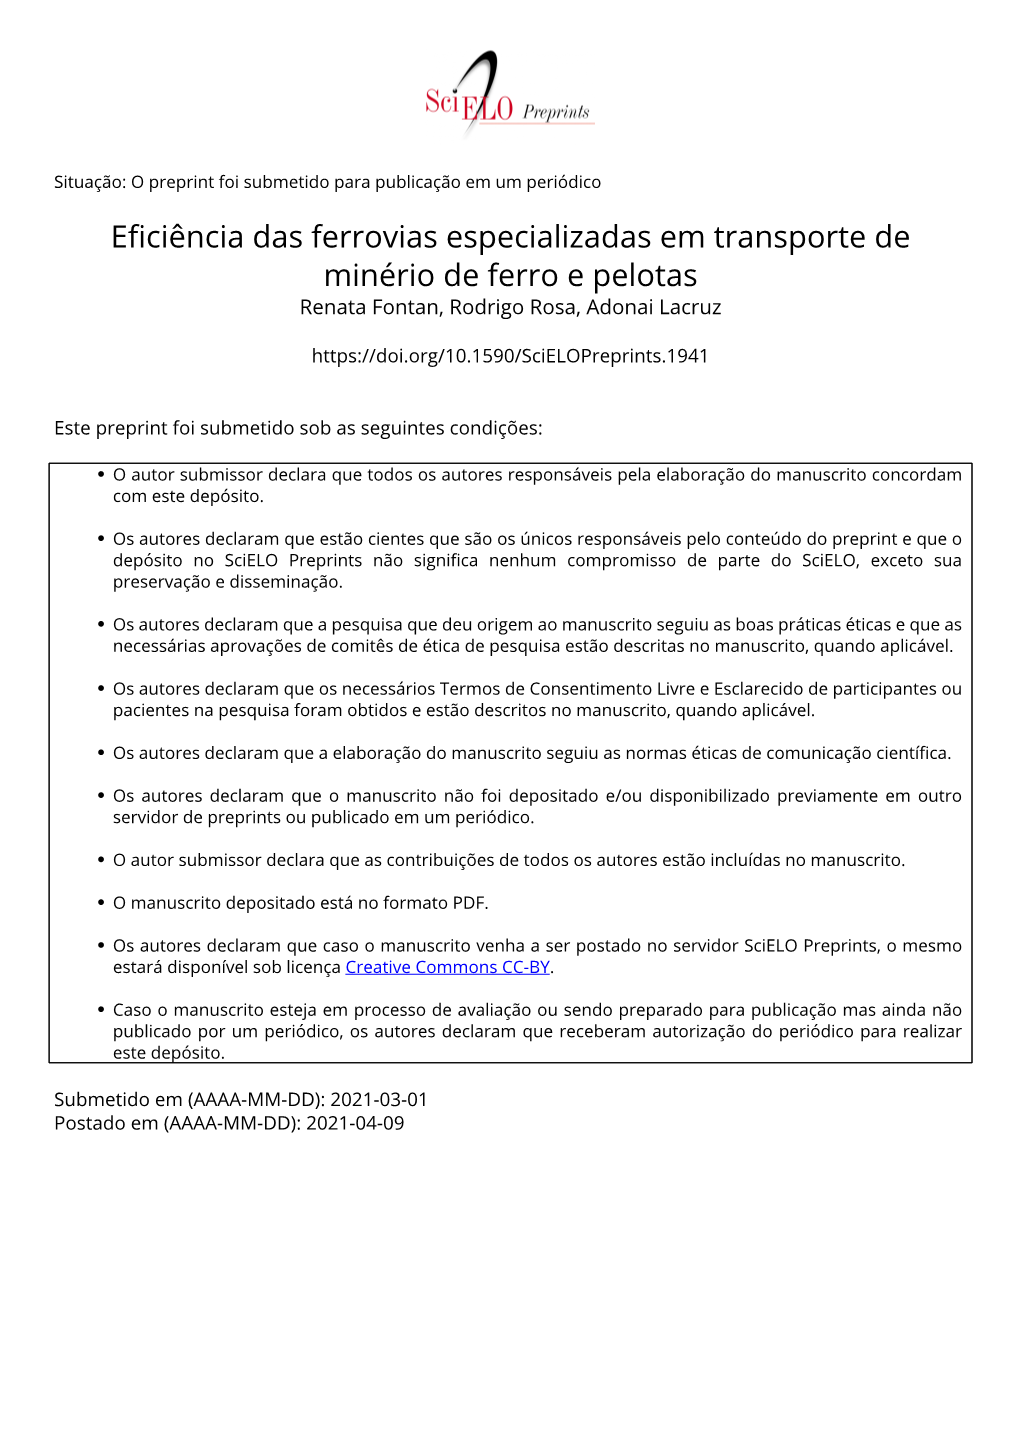 Eficiência Das Ferrovias Especializadas Em Transporte De Minério De Ferro E Pelotas Renata Fontan, Rodrigo Rosa, Adonai Lacruz